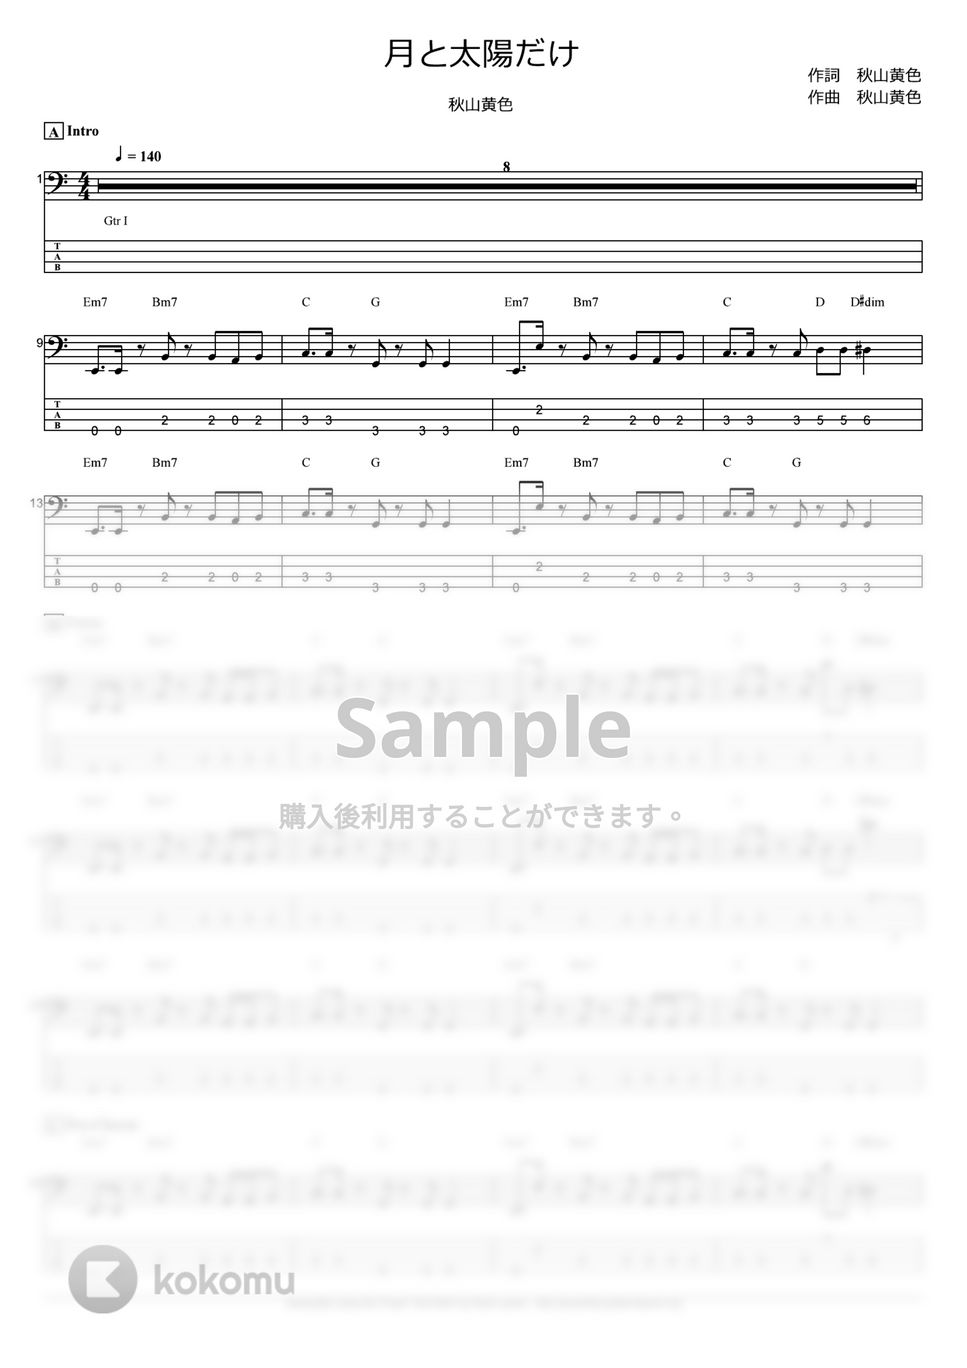 秋山黄色 - 月と太陽だけ (ベース Tab譜 4弦) by T's bass score